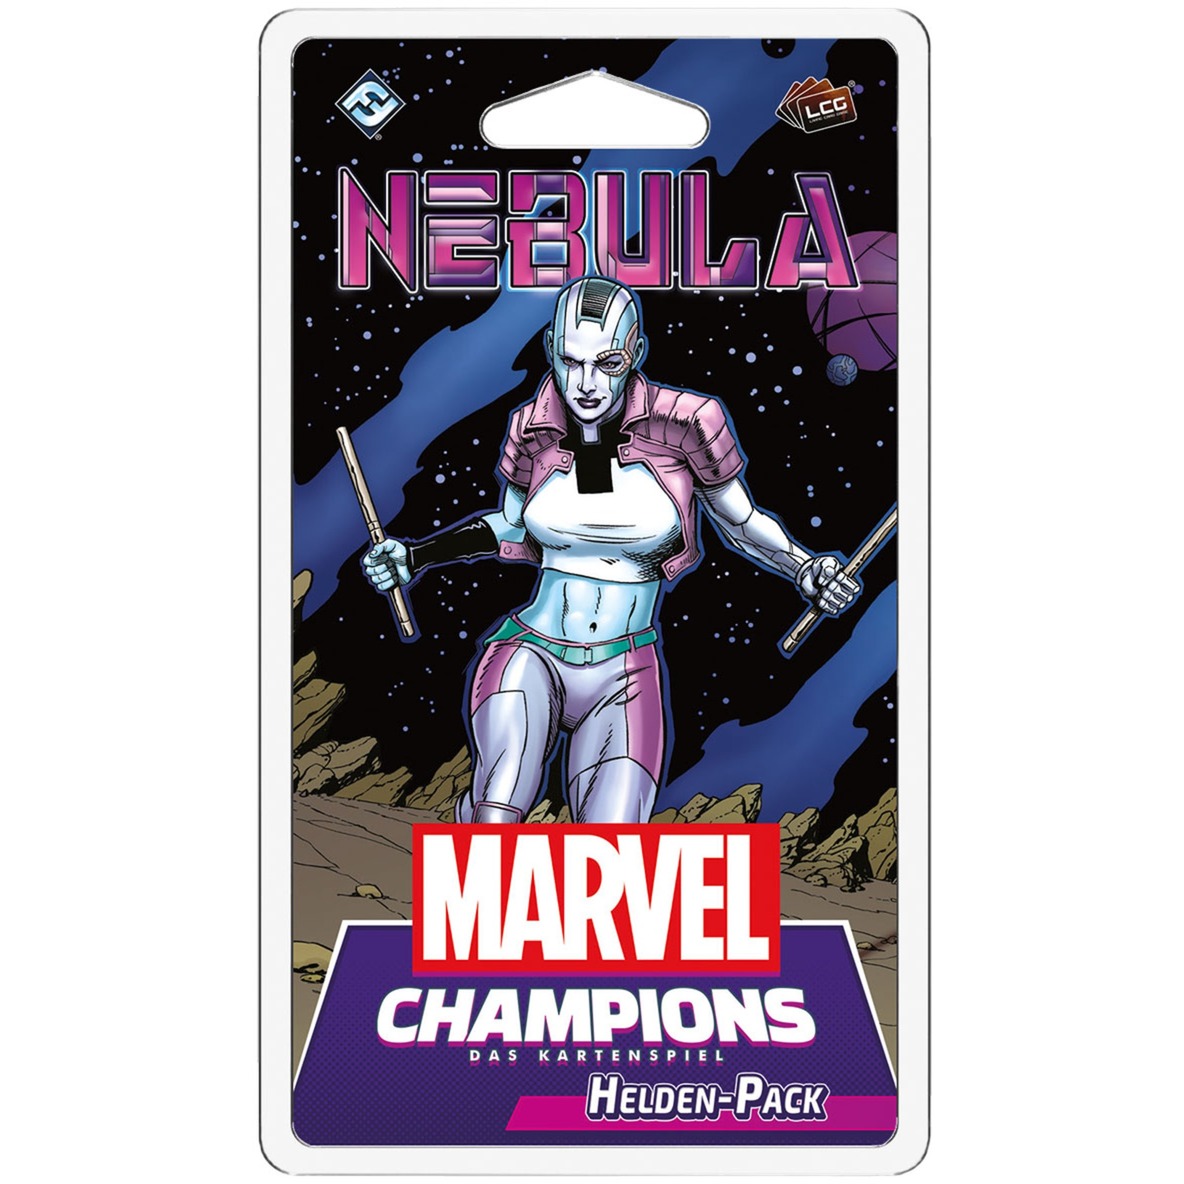 Image of Alternate - Marvel Champions: Das Kartenspiel - Nebula online einkaufen bei Alternate